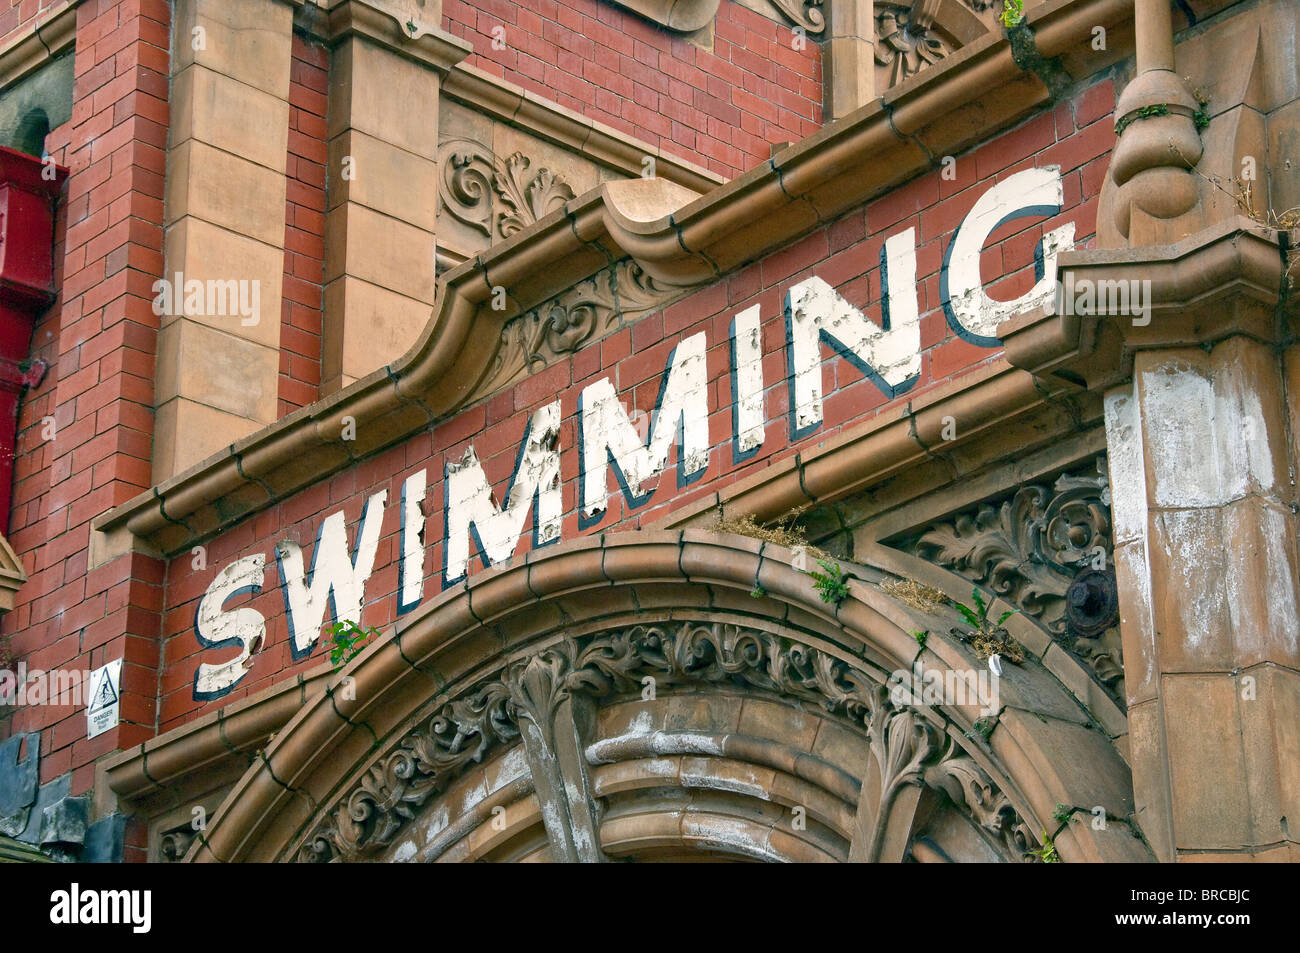 Nahaufnahme von Ripon Spa Swimming Bäder Pool alt gestrichen schild Park Street Ripon North Yorkshire England Vereinigtes Königreich GB Großbritannien Stockfoto